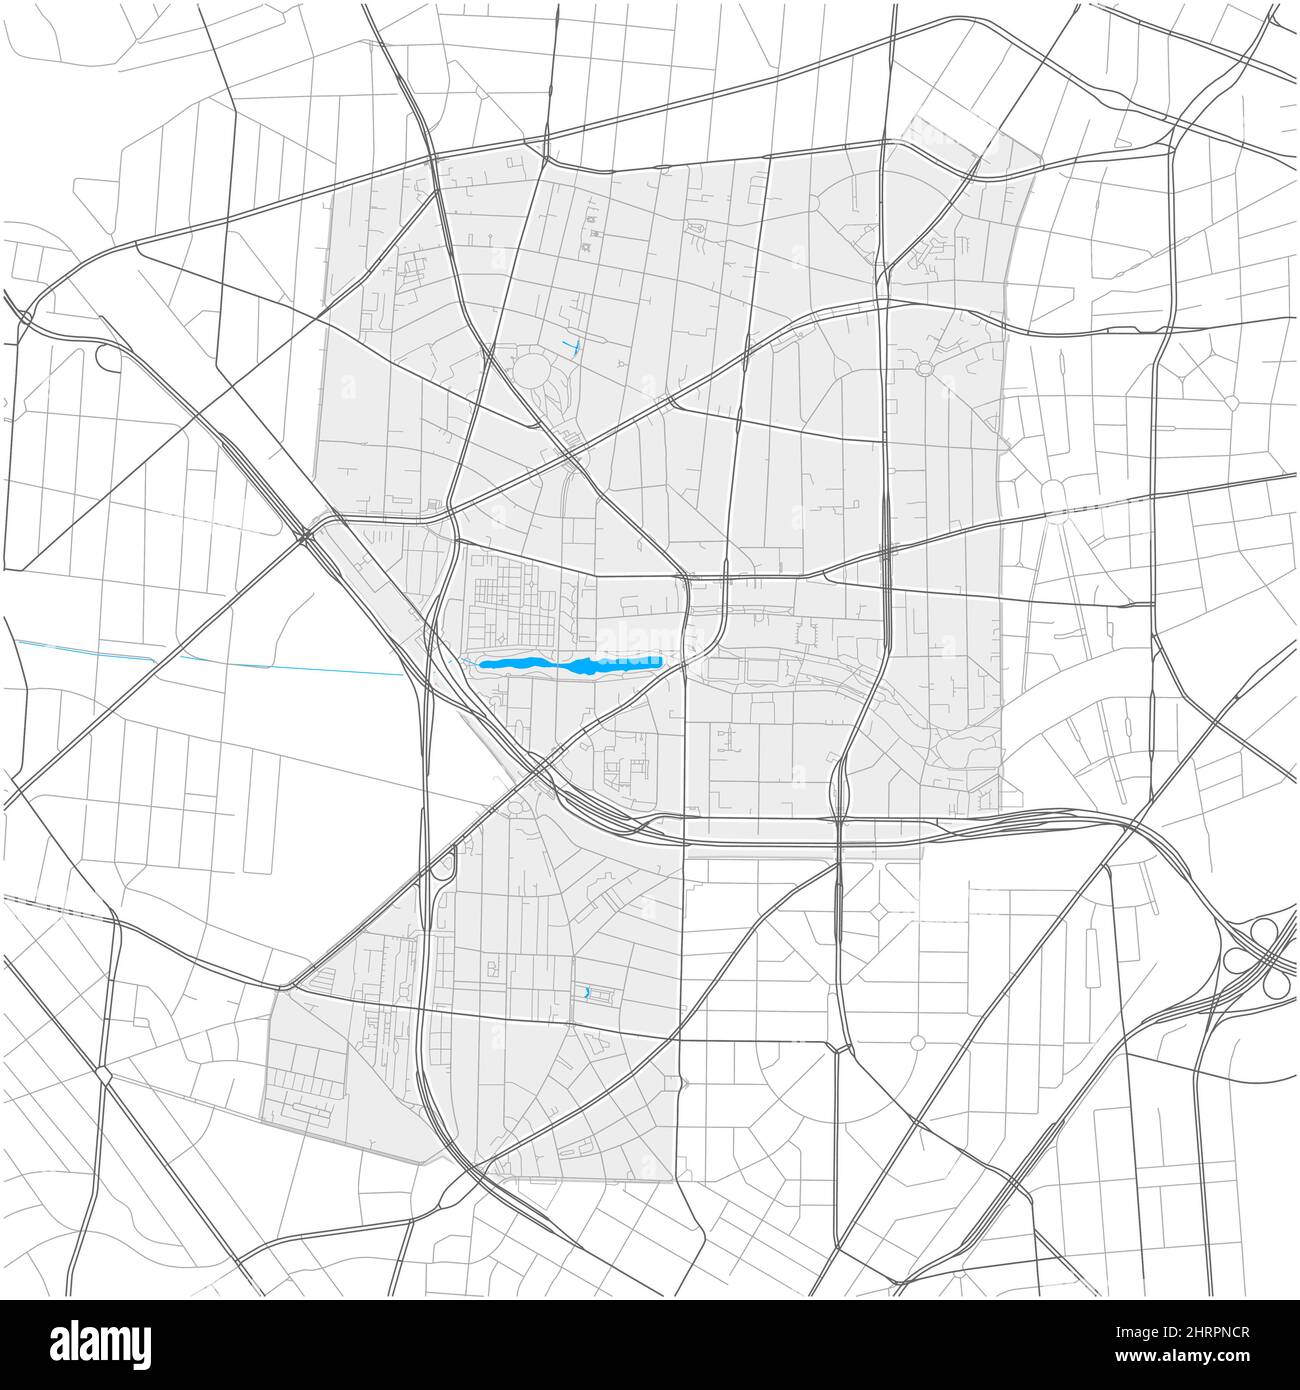 Wilmersdorf, Berlino, DEUTSCHLAND, mappa vettoriale di alto livello con confini della città e percorsi modificabili. Contorni bianchi per le strade principali. Molti percorsi più piccoli. B Illustrazione Vettoriale